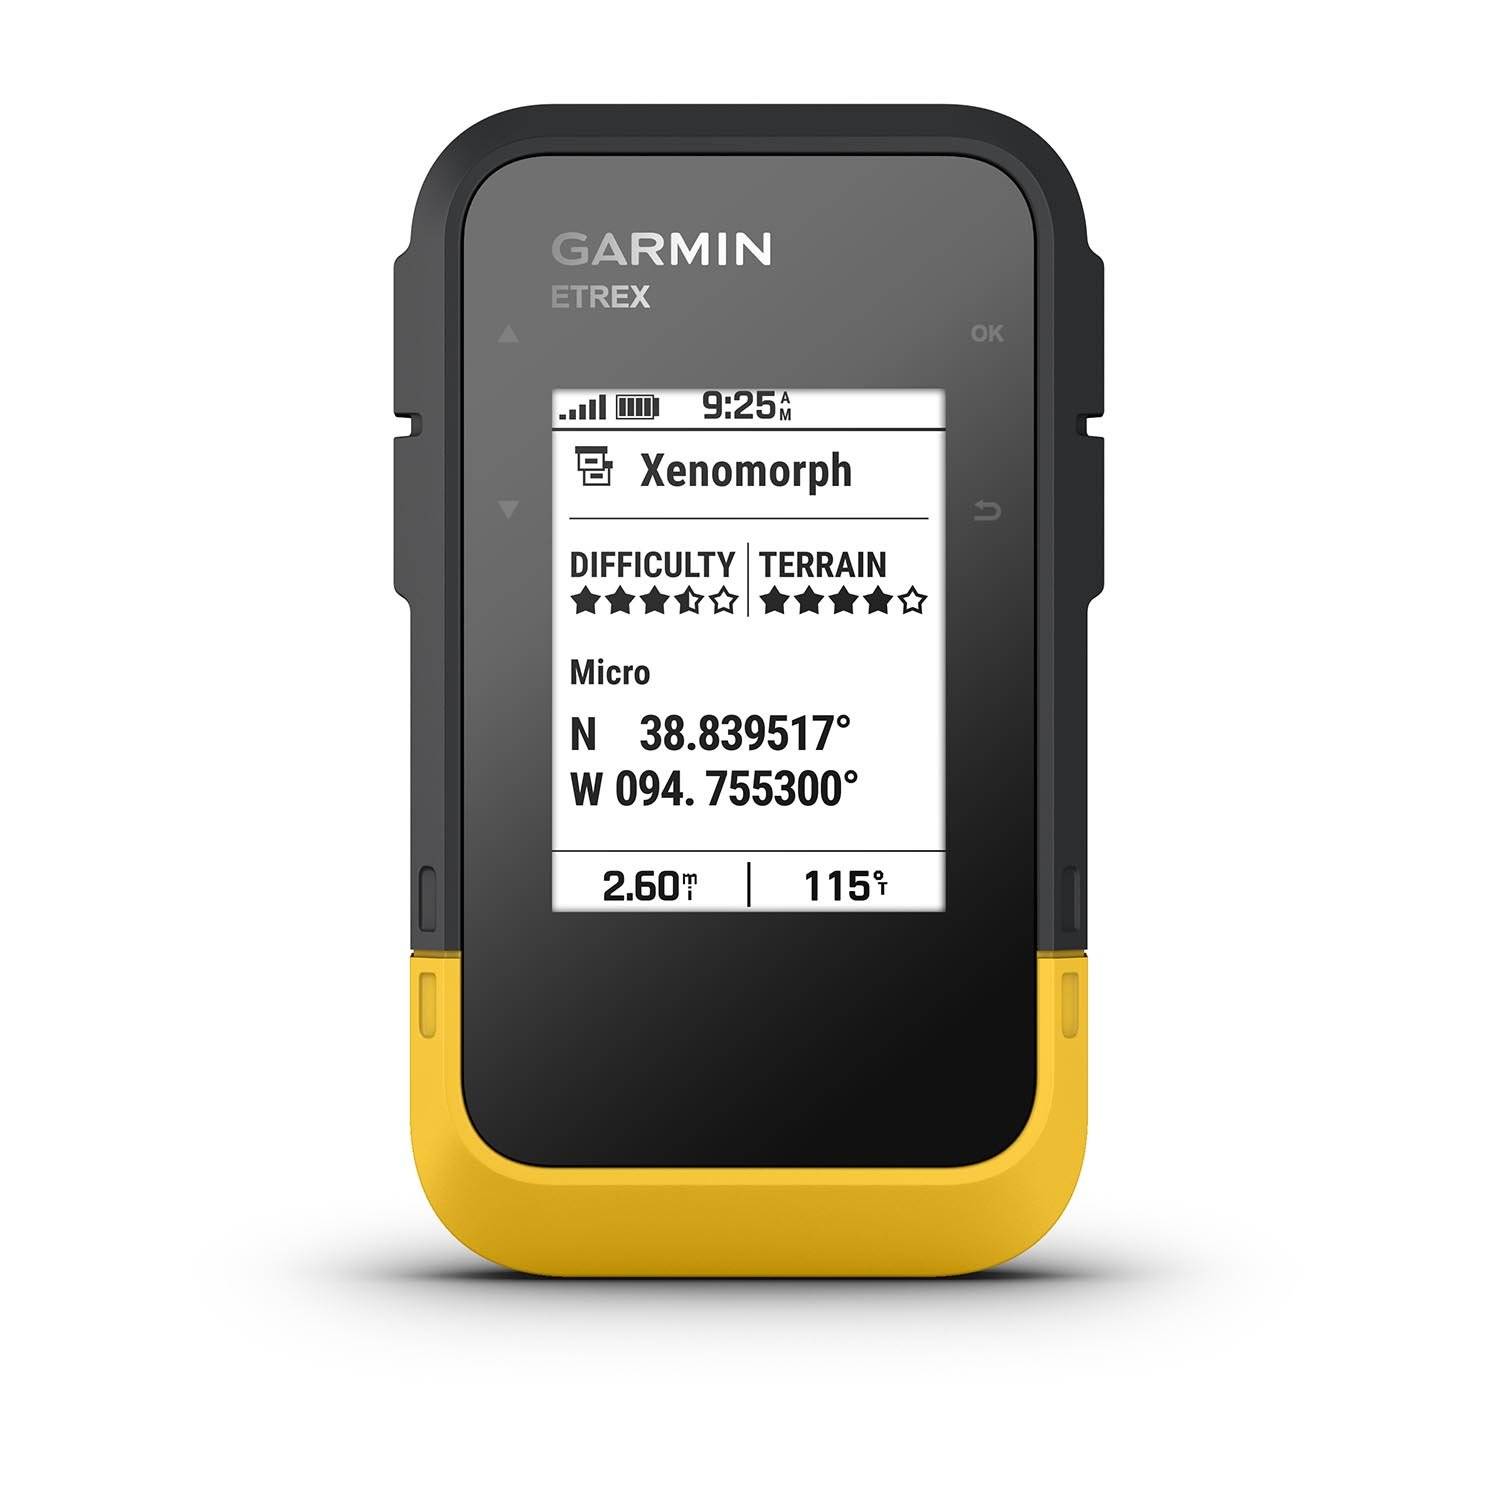 Garmin eTrex GPS Handheld Navigator